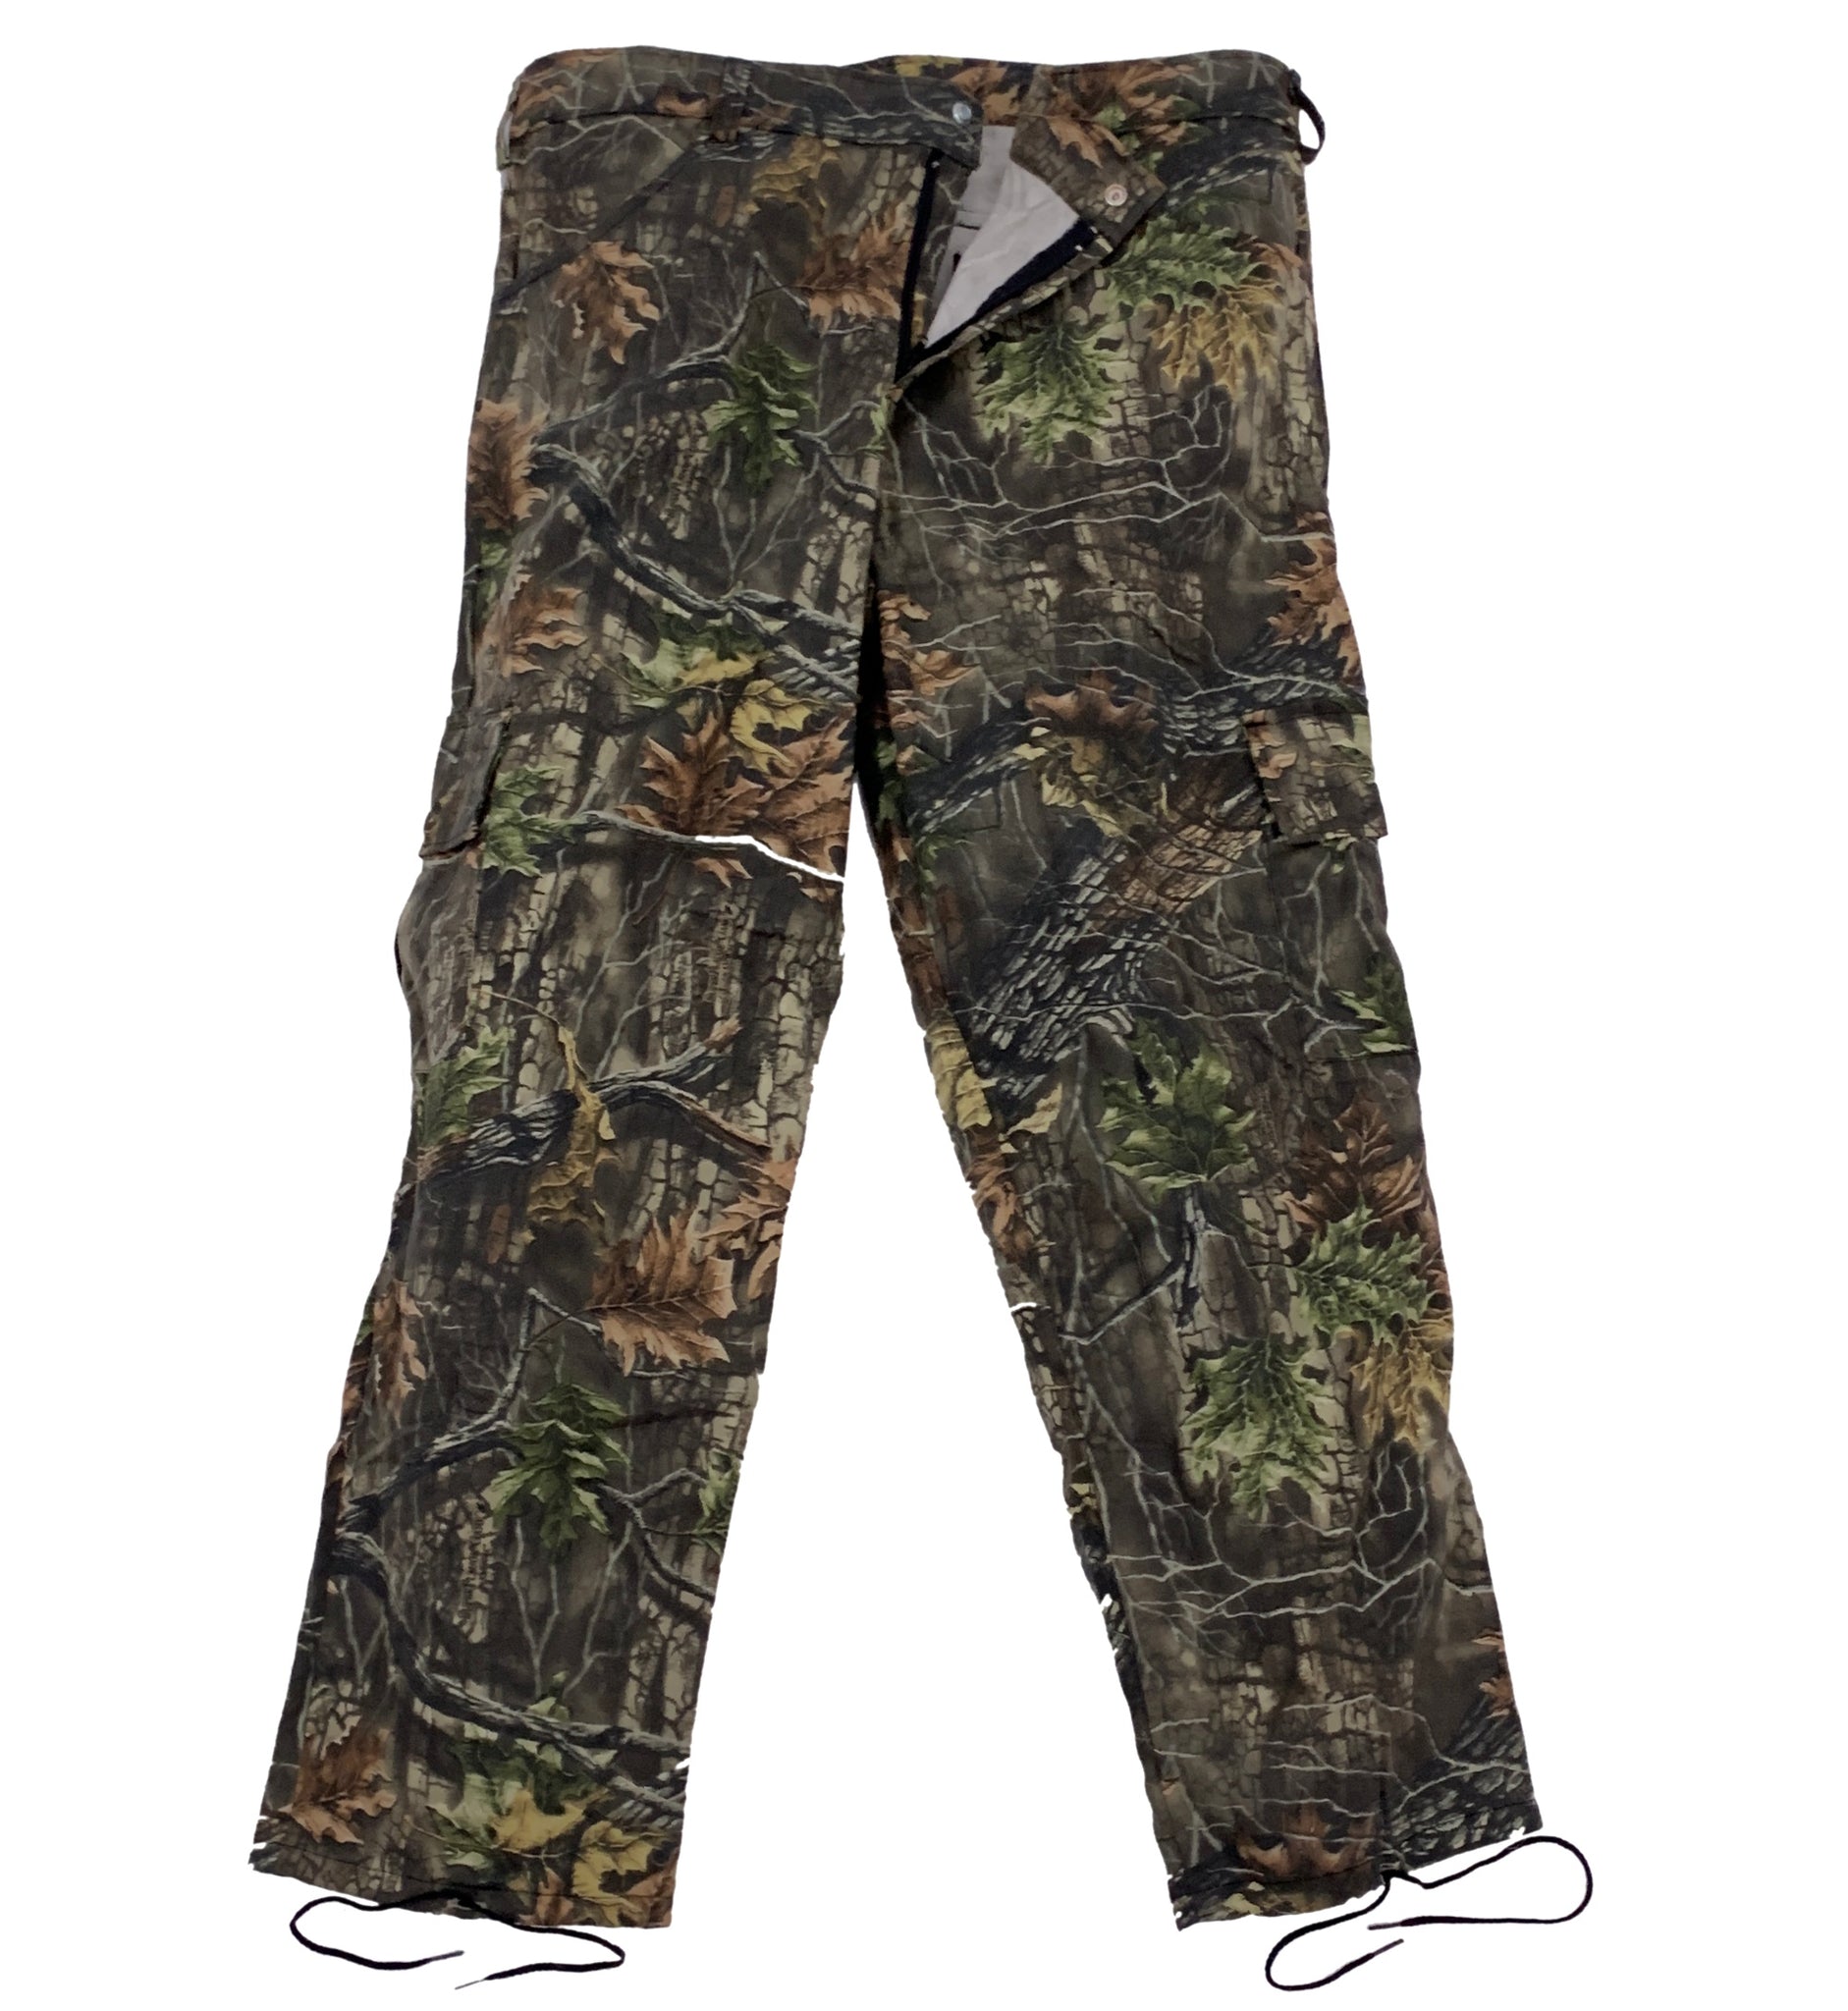 Big & Tall BDU Camo Hunting Pants â Big Outdoors LLC